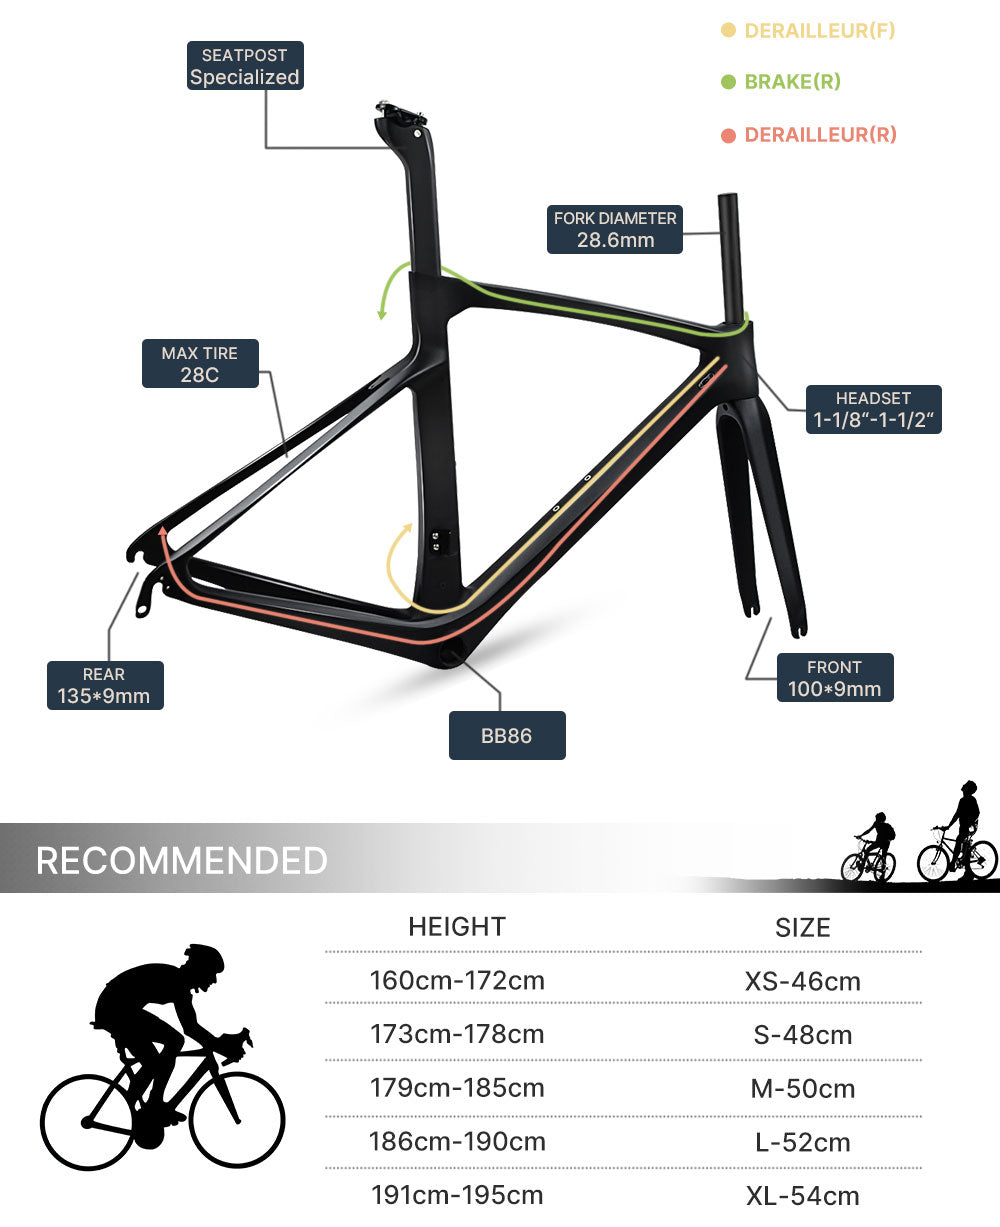 carbon road bike frame